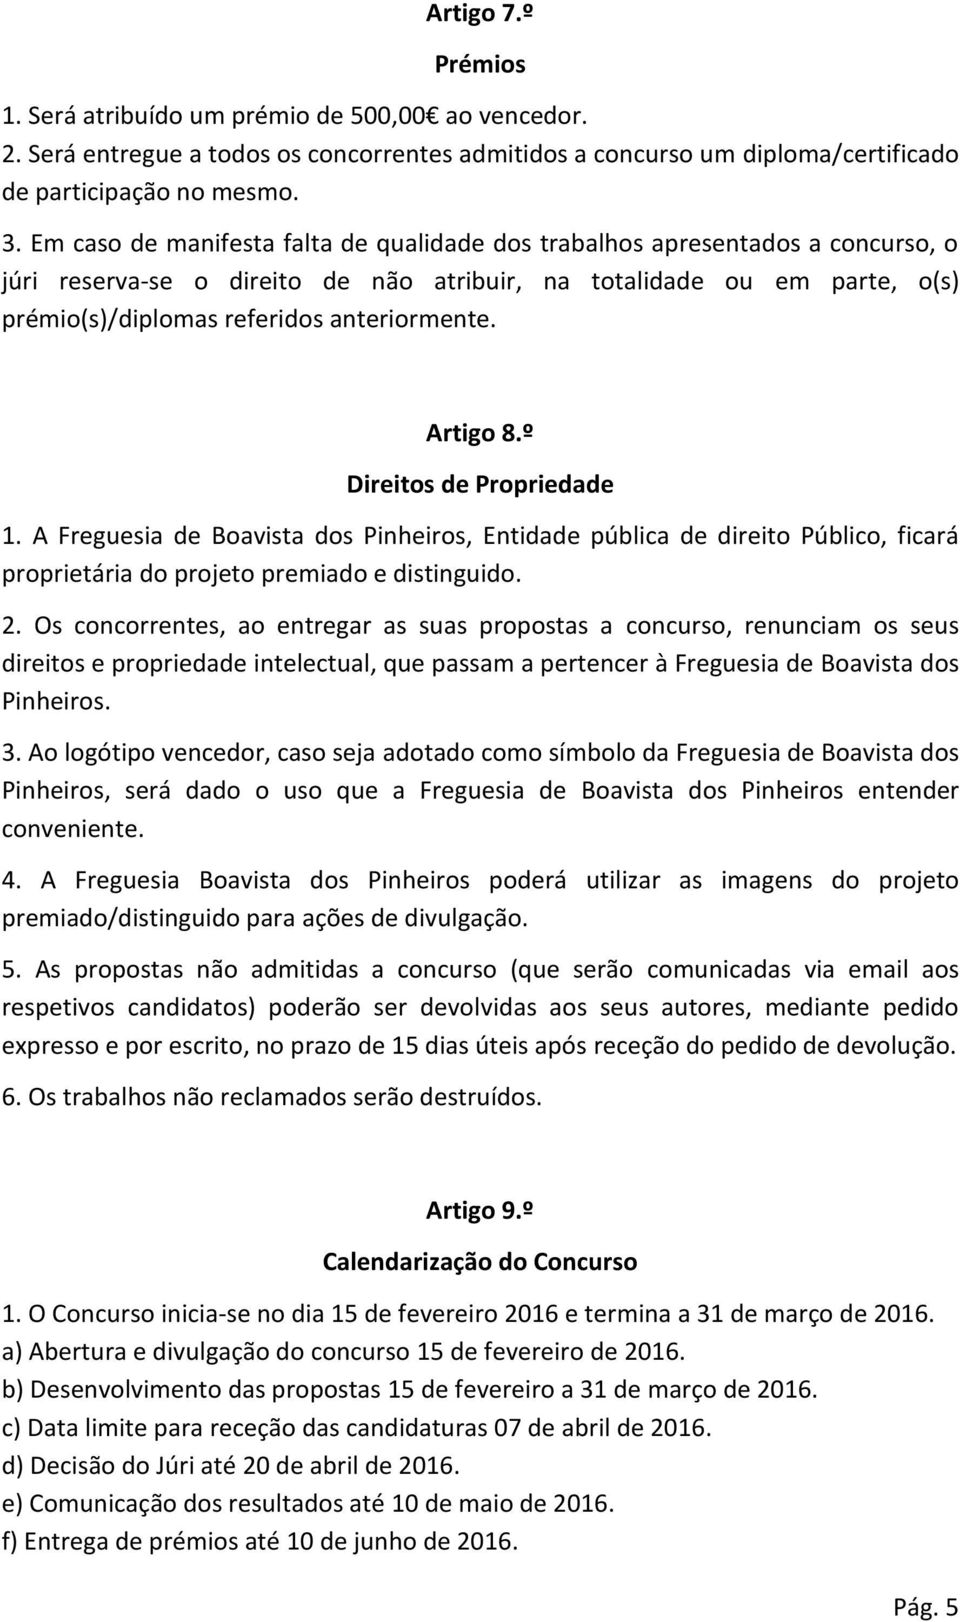 Artigo 8.º Direitos de Propriedade 1. A Freguesia de Boavista dos Pinheiros, Entidade pública de direito Público, ficará proprietária do projeto premiado e distinguido. 2.